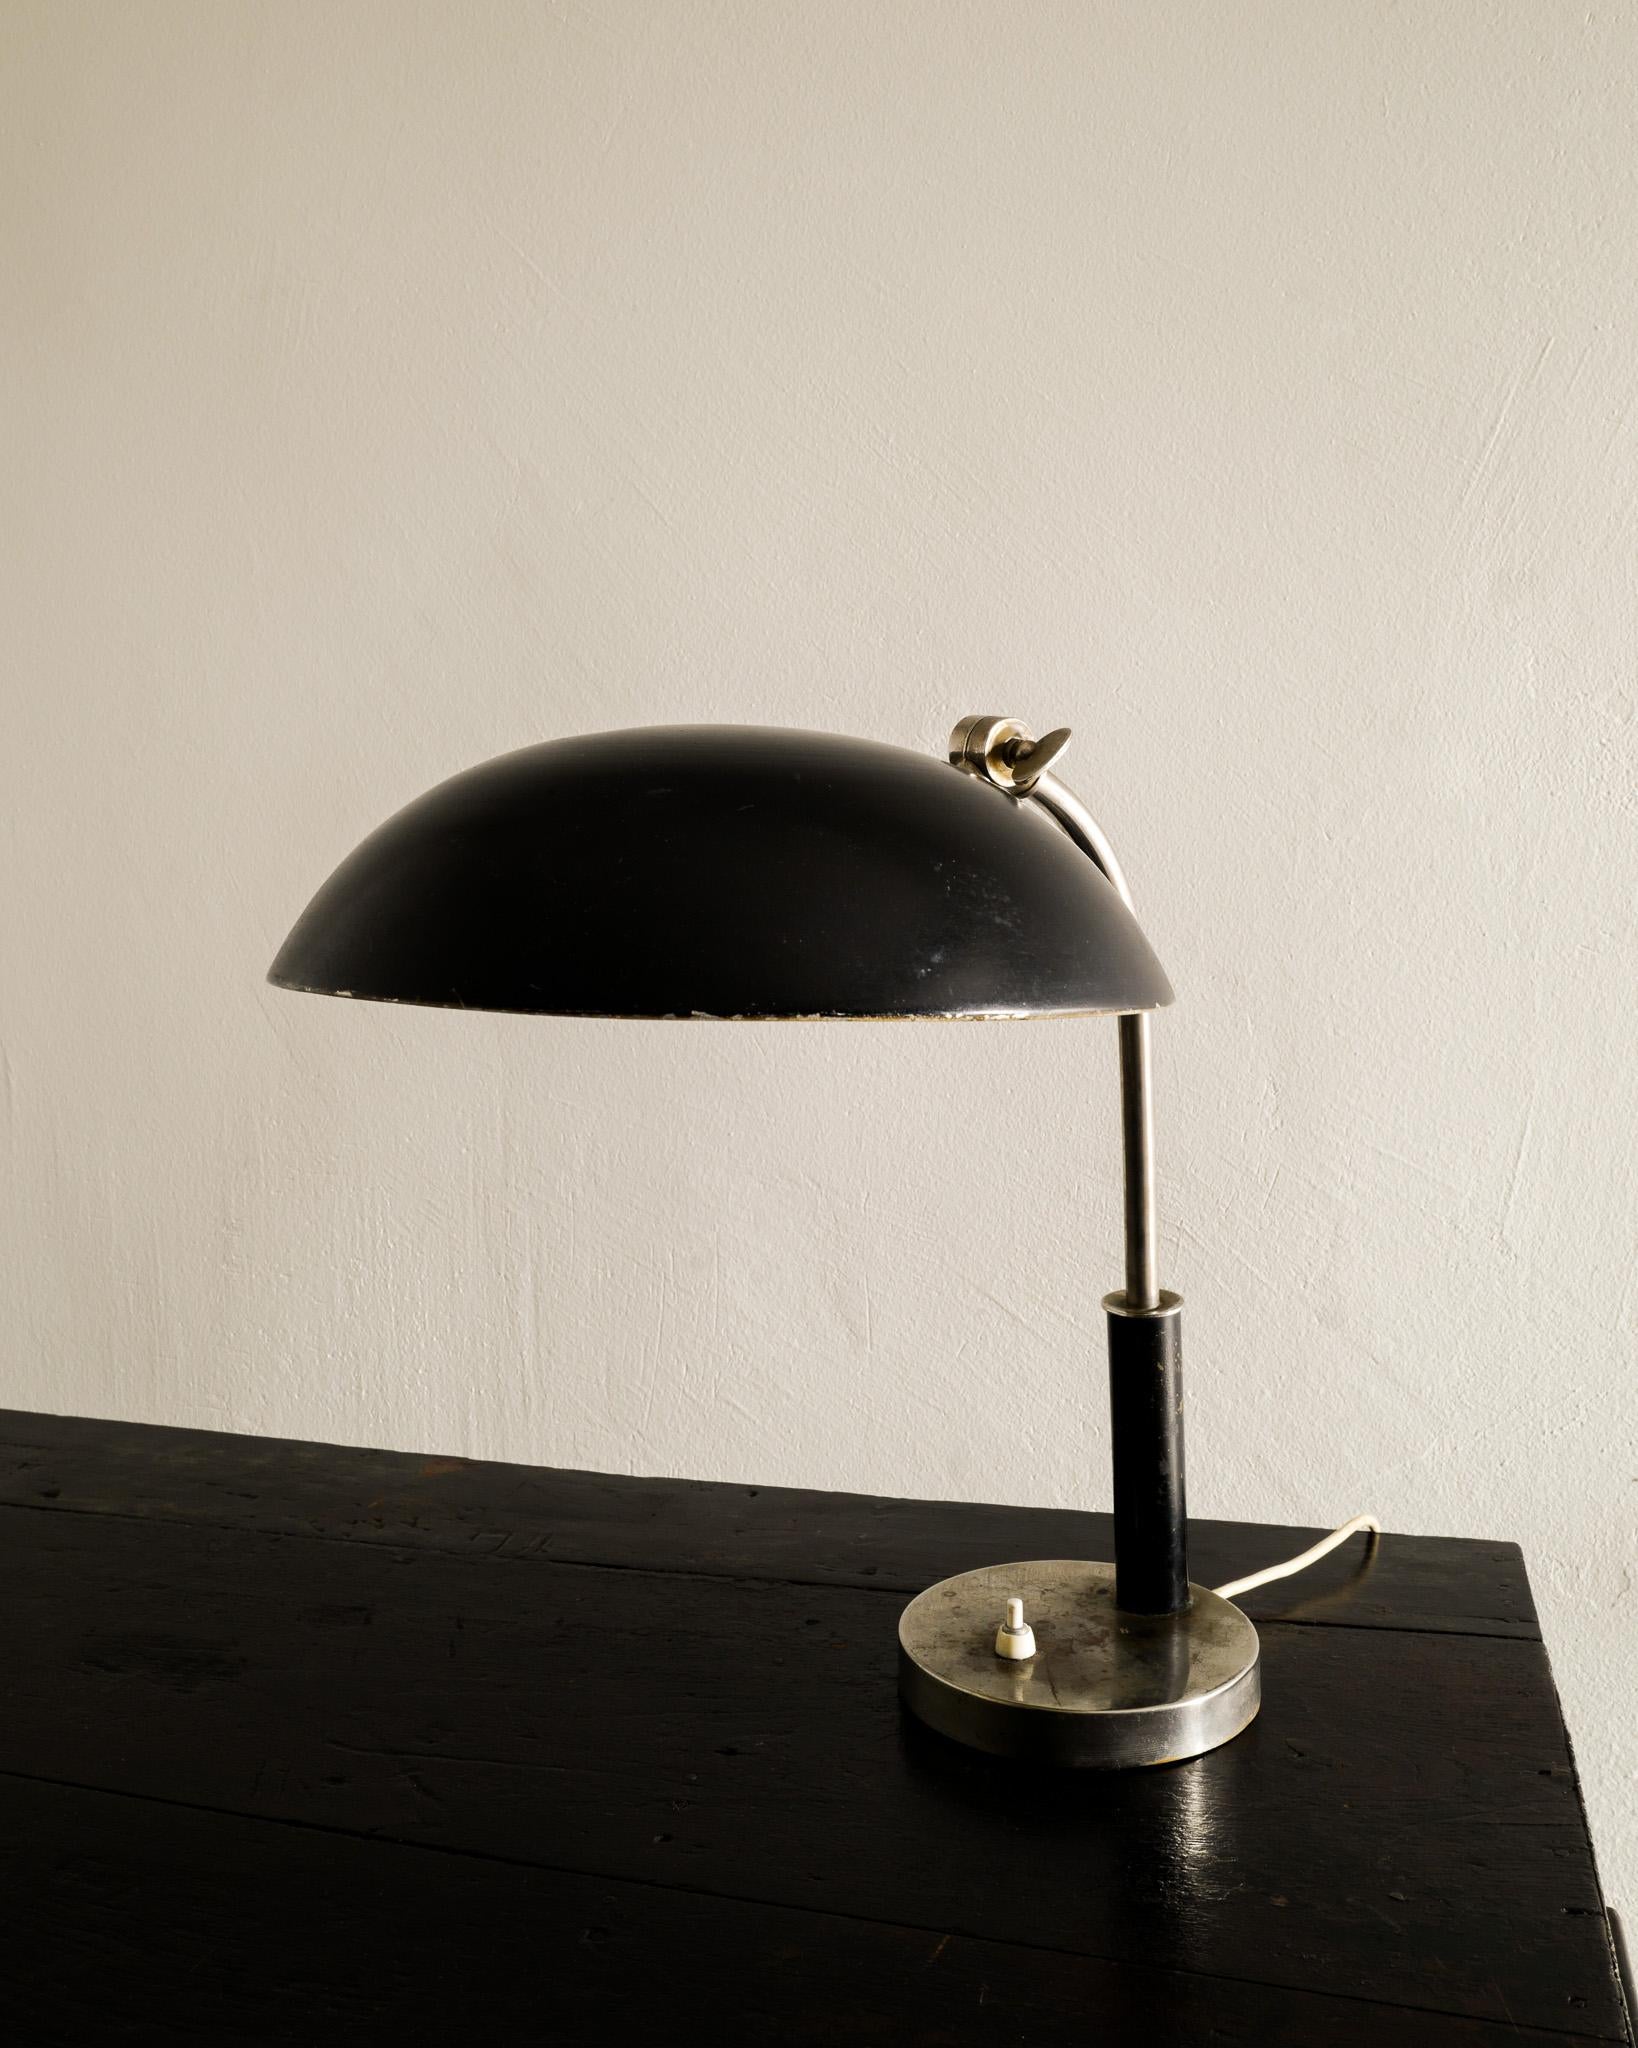 Seltene Tisch-/Schreibtischlampe aus der Mitte des Jahrhunderts aus Metall, hergestellt in Schweden in den 1940er Jahren. In gutem Originalzustand mit alters- und gebrauchsbedingter Patina. Gute Arbeit. 

Abmessungen: H: 38 cm / 14.95